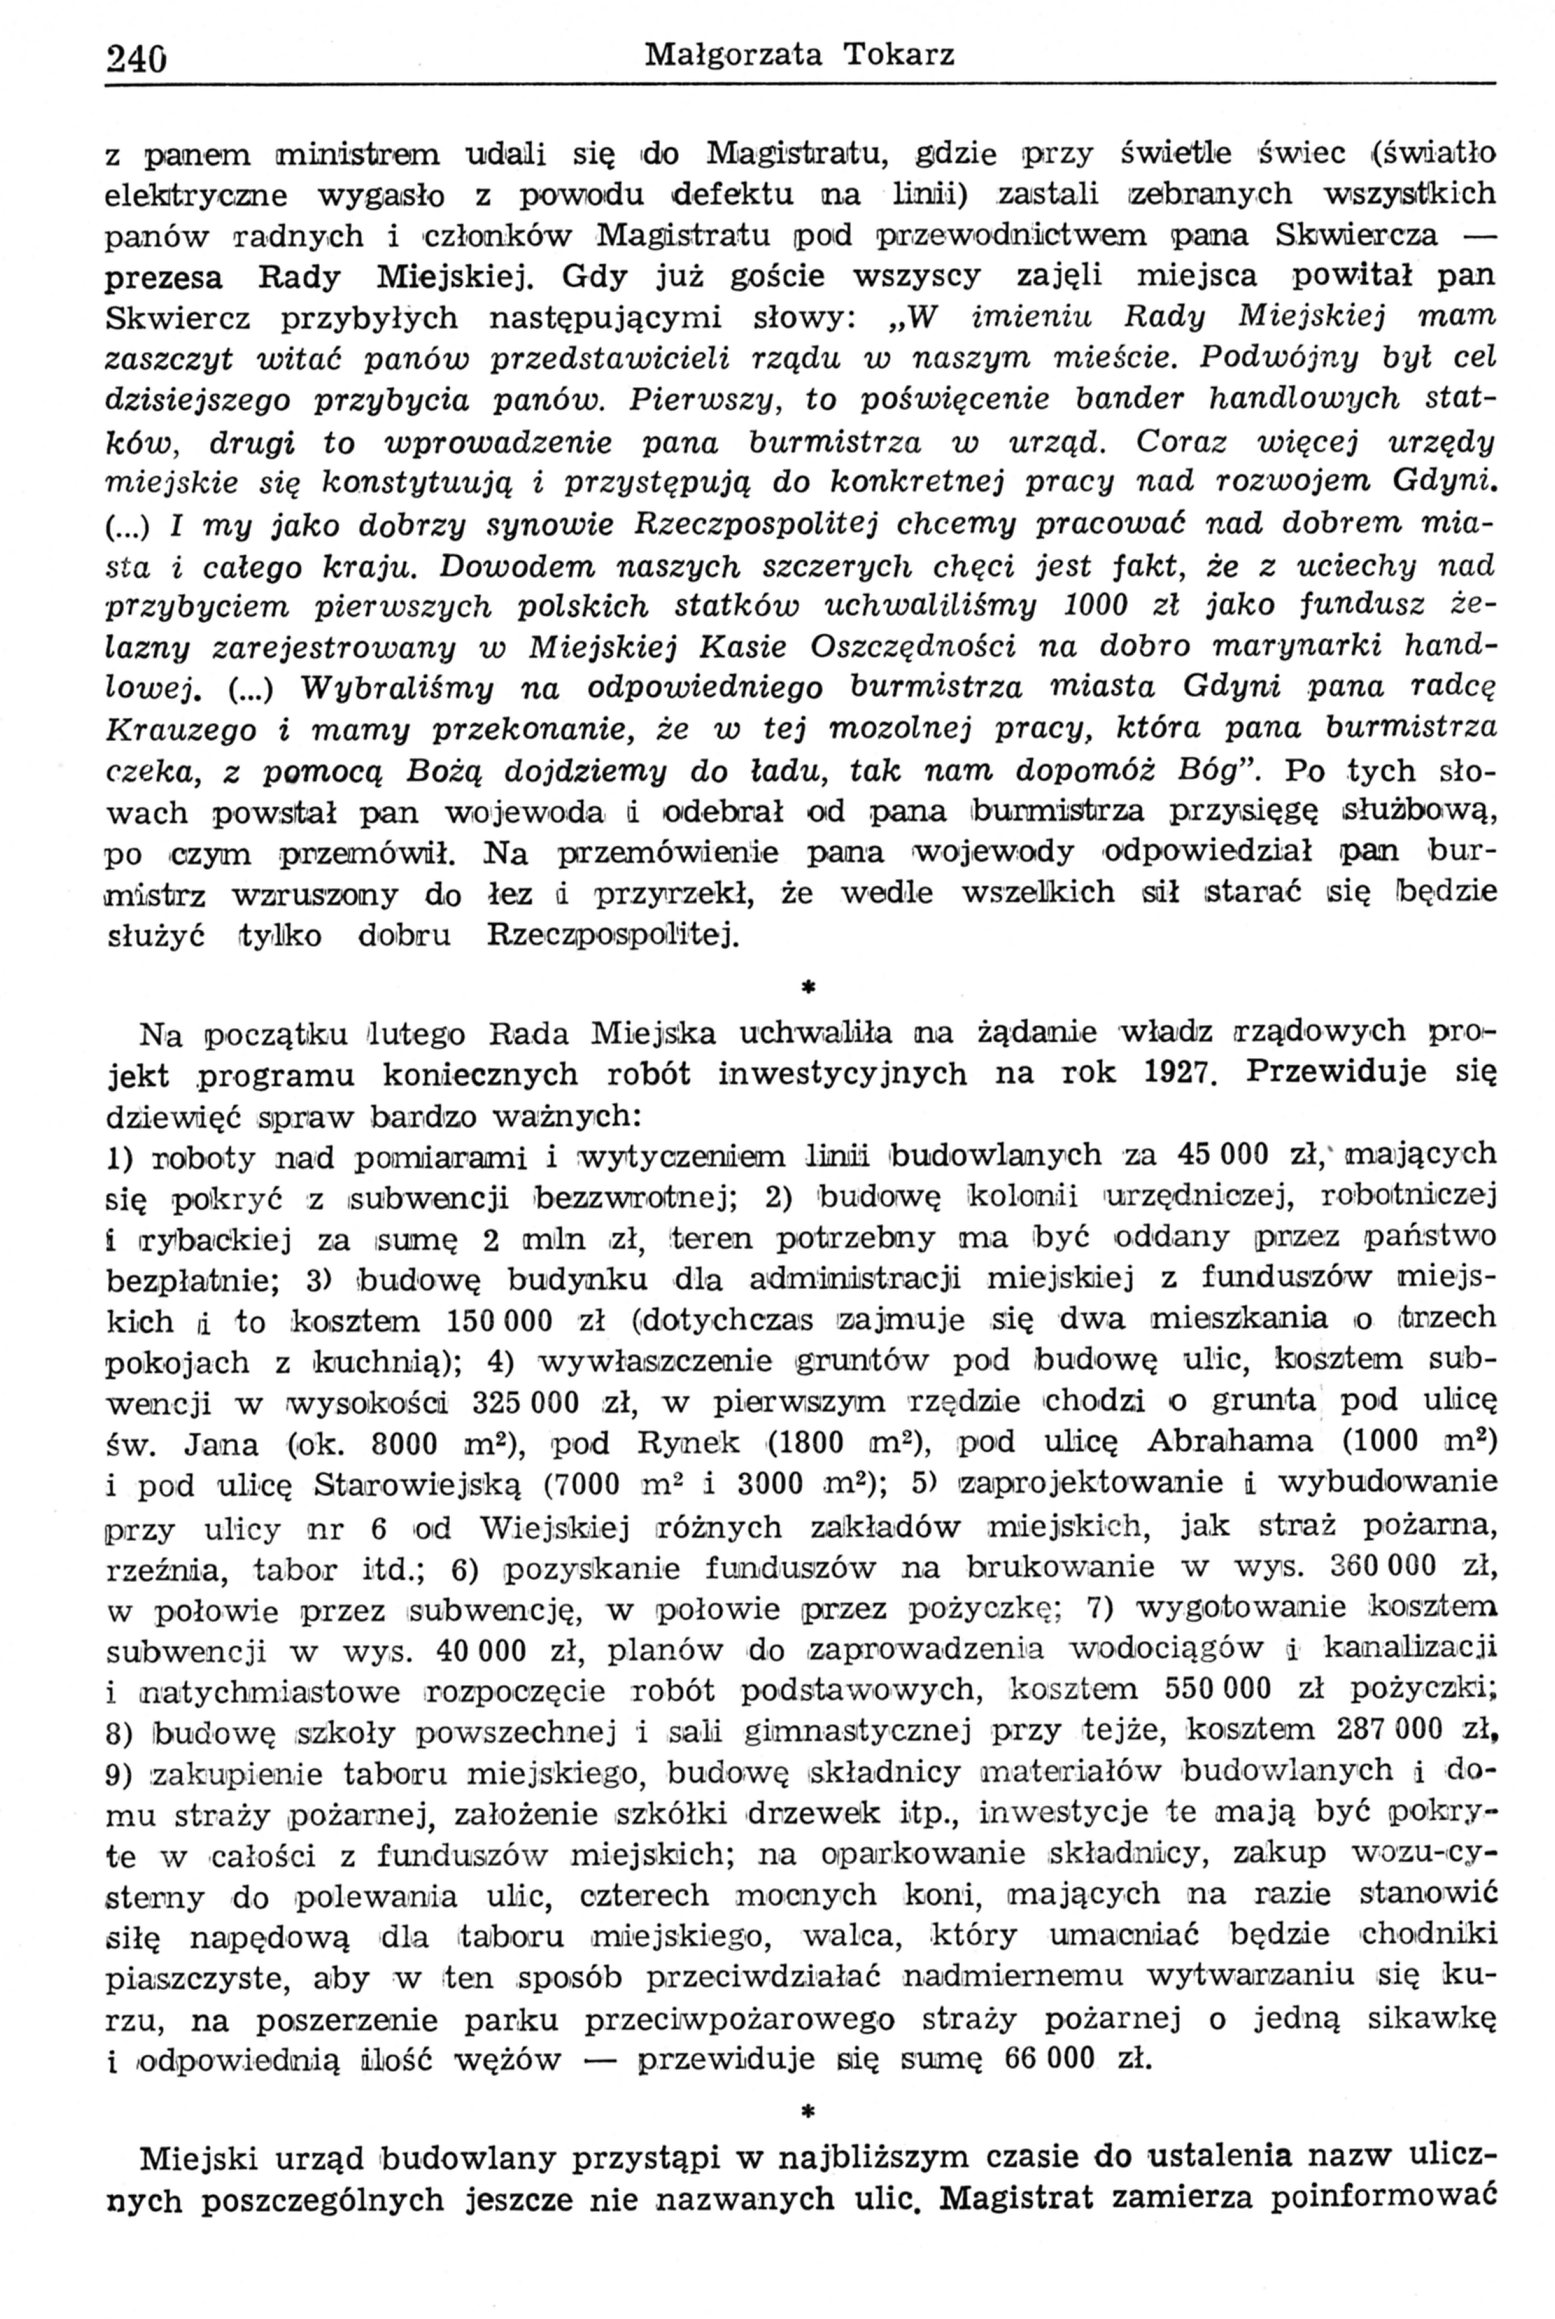 Gdynia - rok 1927 (kalejdoskop wycinków prasowych)